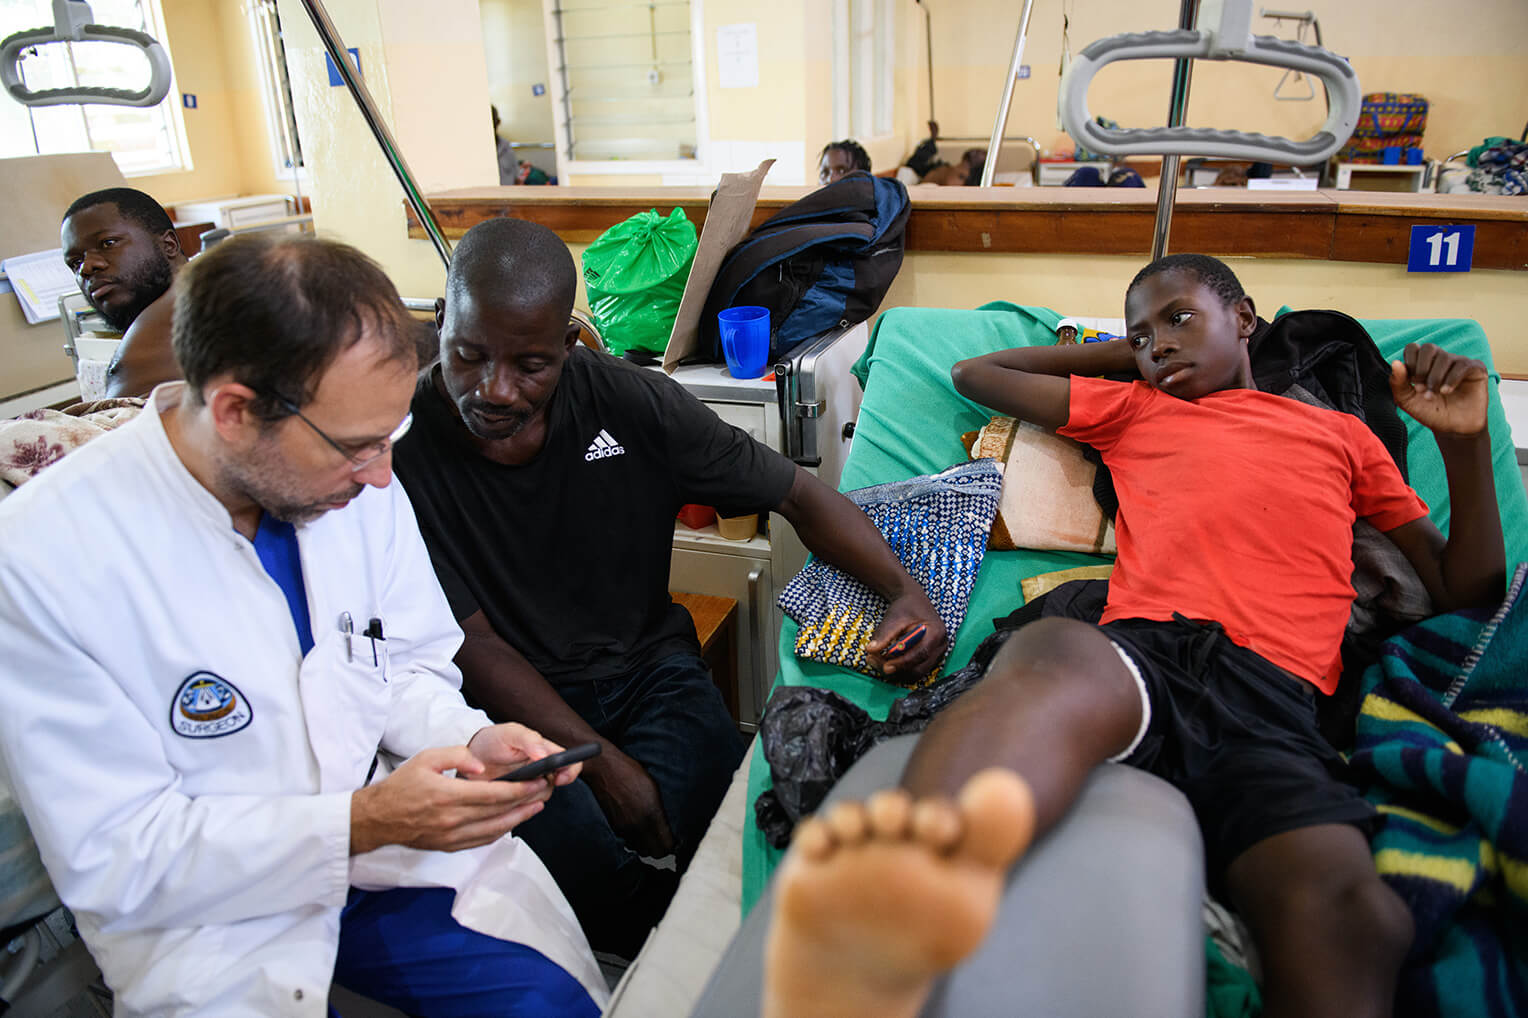 Steven y su padre viajaron desde Mchinji, una aldea a unos 160 kilómetros del hospital Nkhoma, para recibir cirugía urgente.